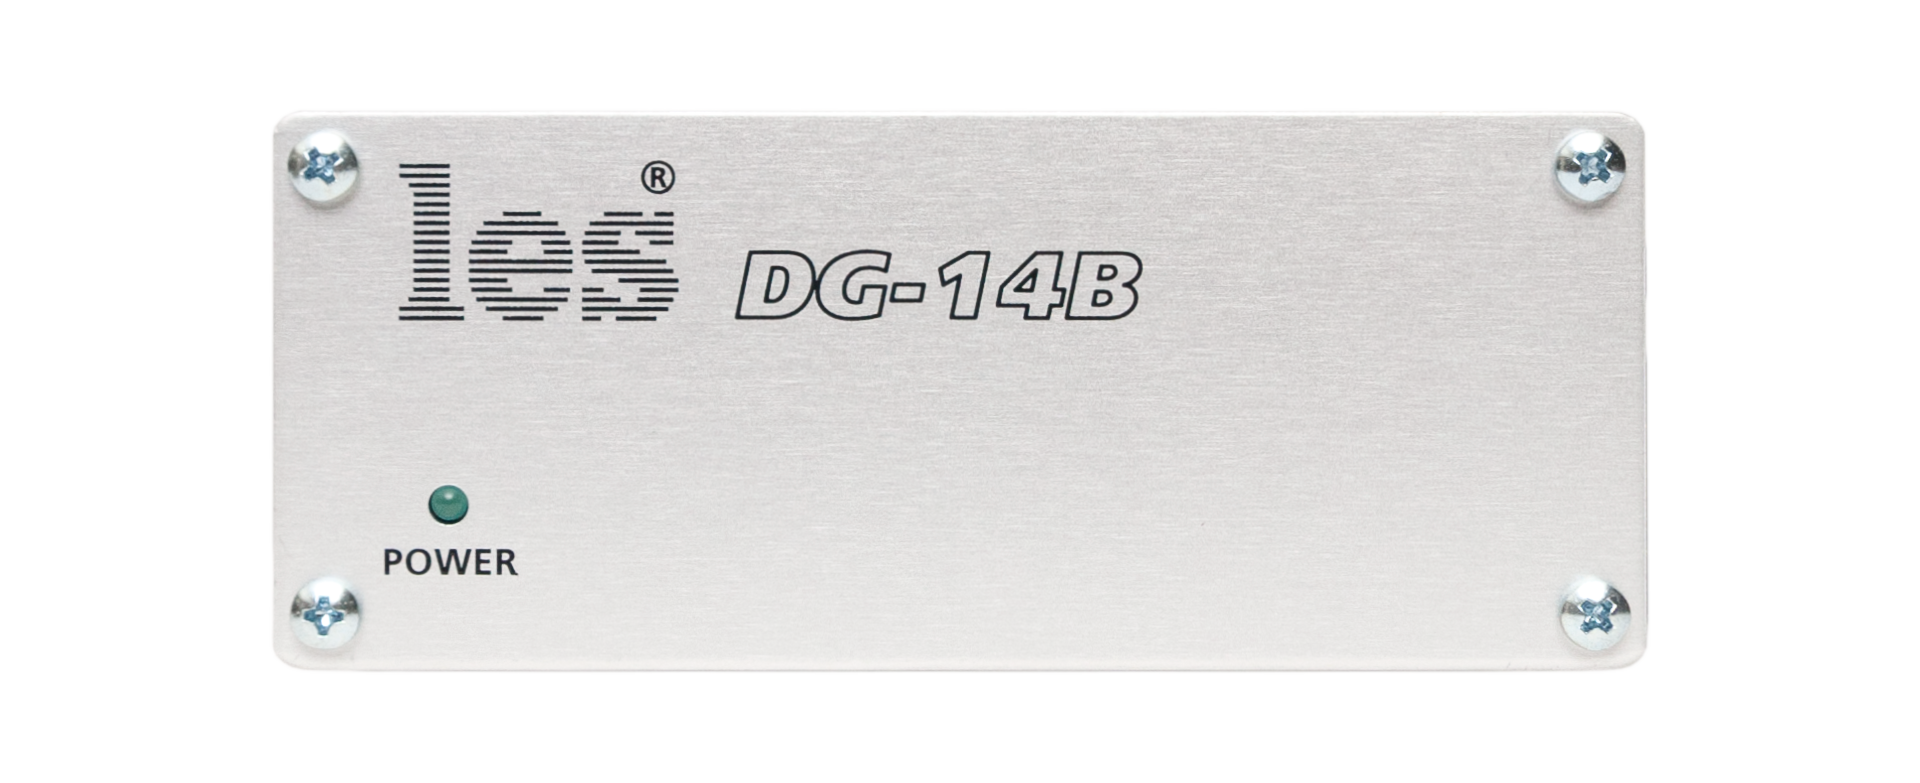 DG-14B генератор синхросигналов Les